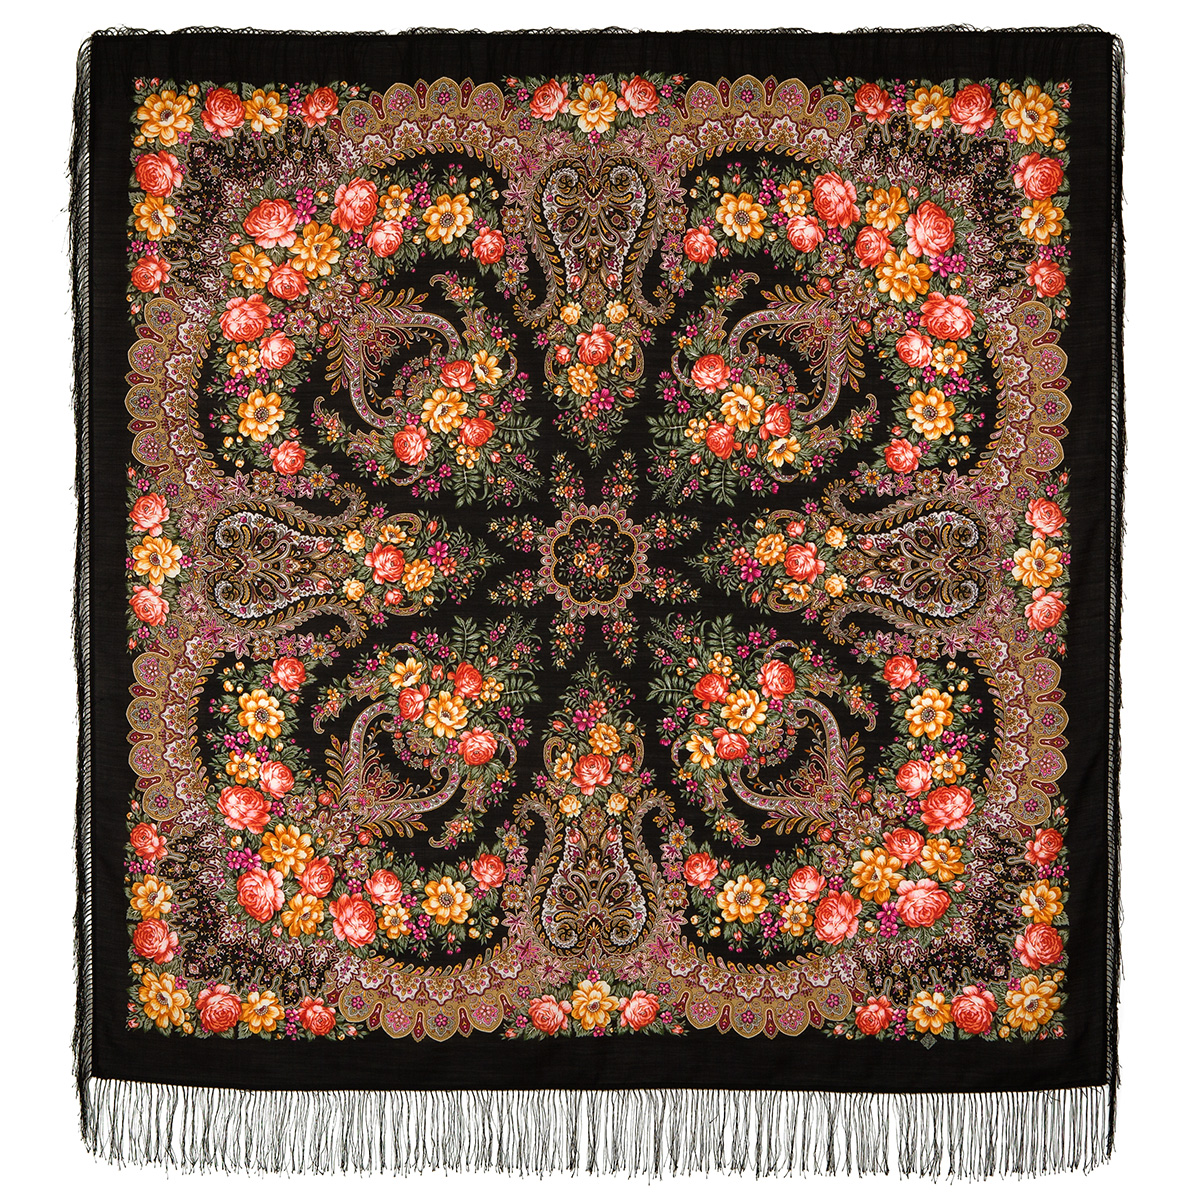 Платок женский Павловопосадский платок 1727 черный/желтый/оранжевый, 146х146 см